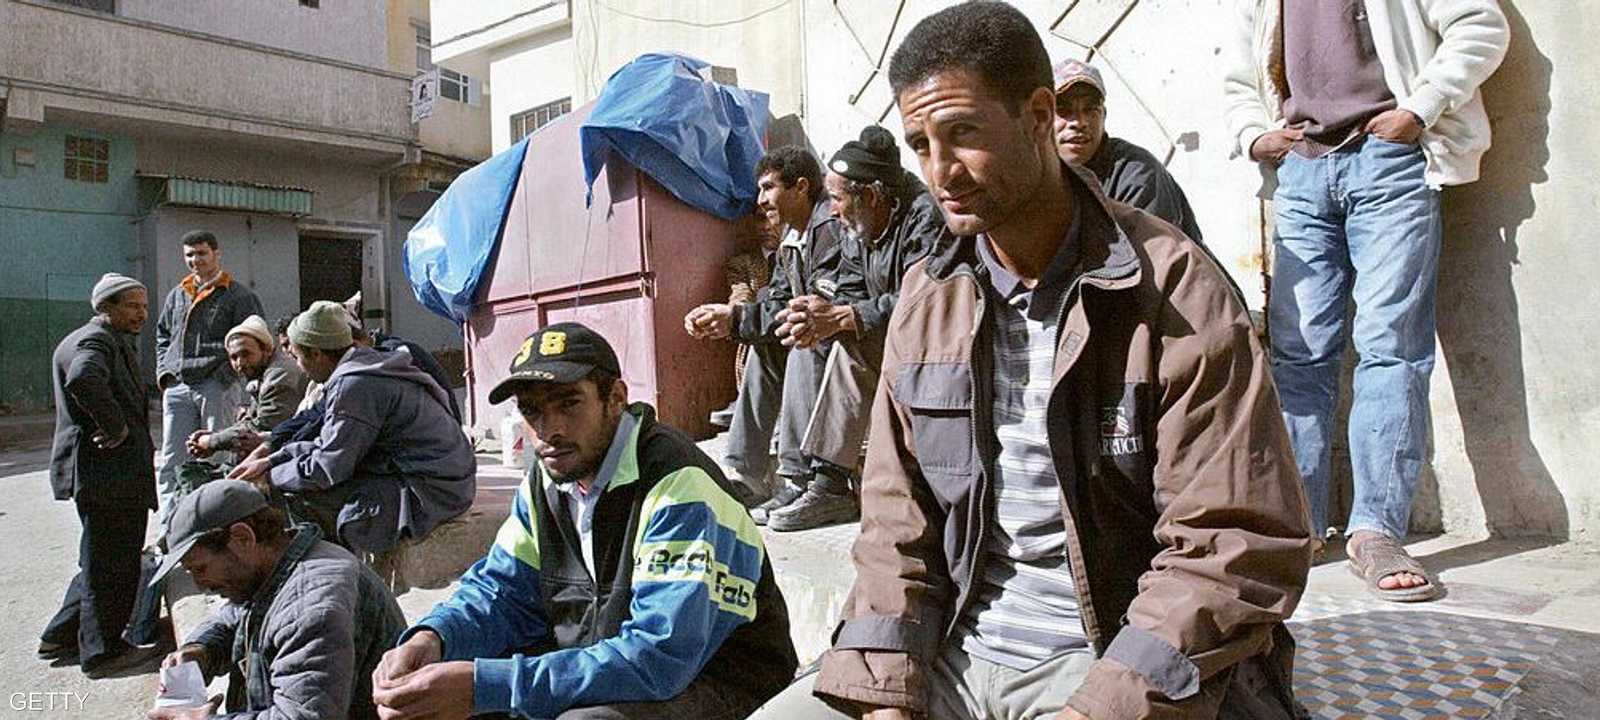 ارتفعت نسبة البطالة في المغرب رغم وجود مؤشرات إيجابية